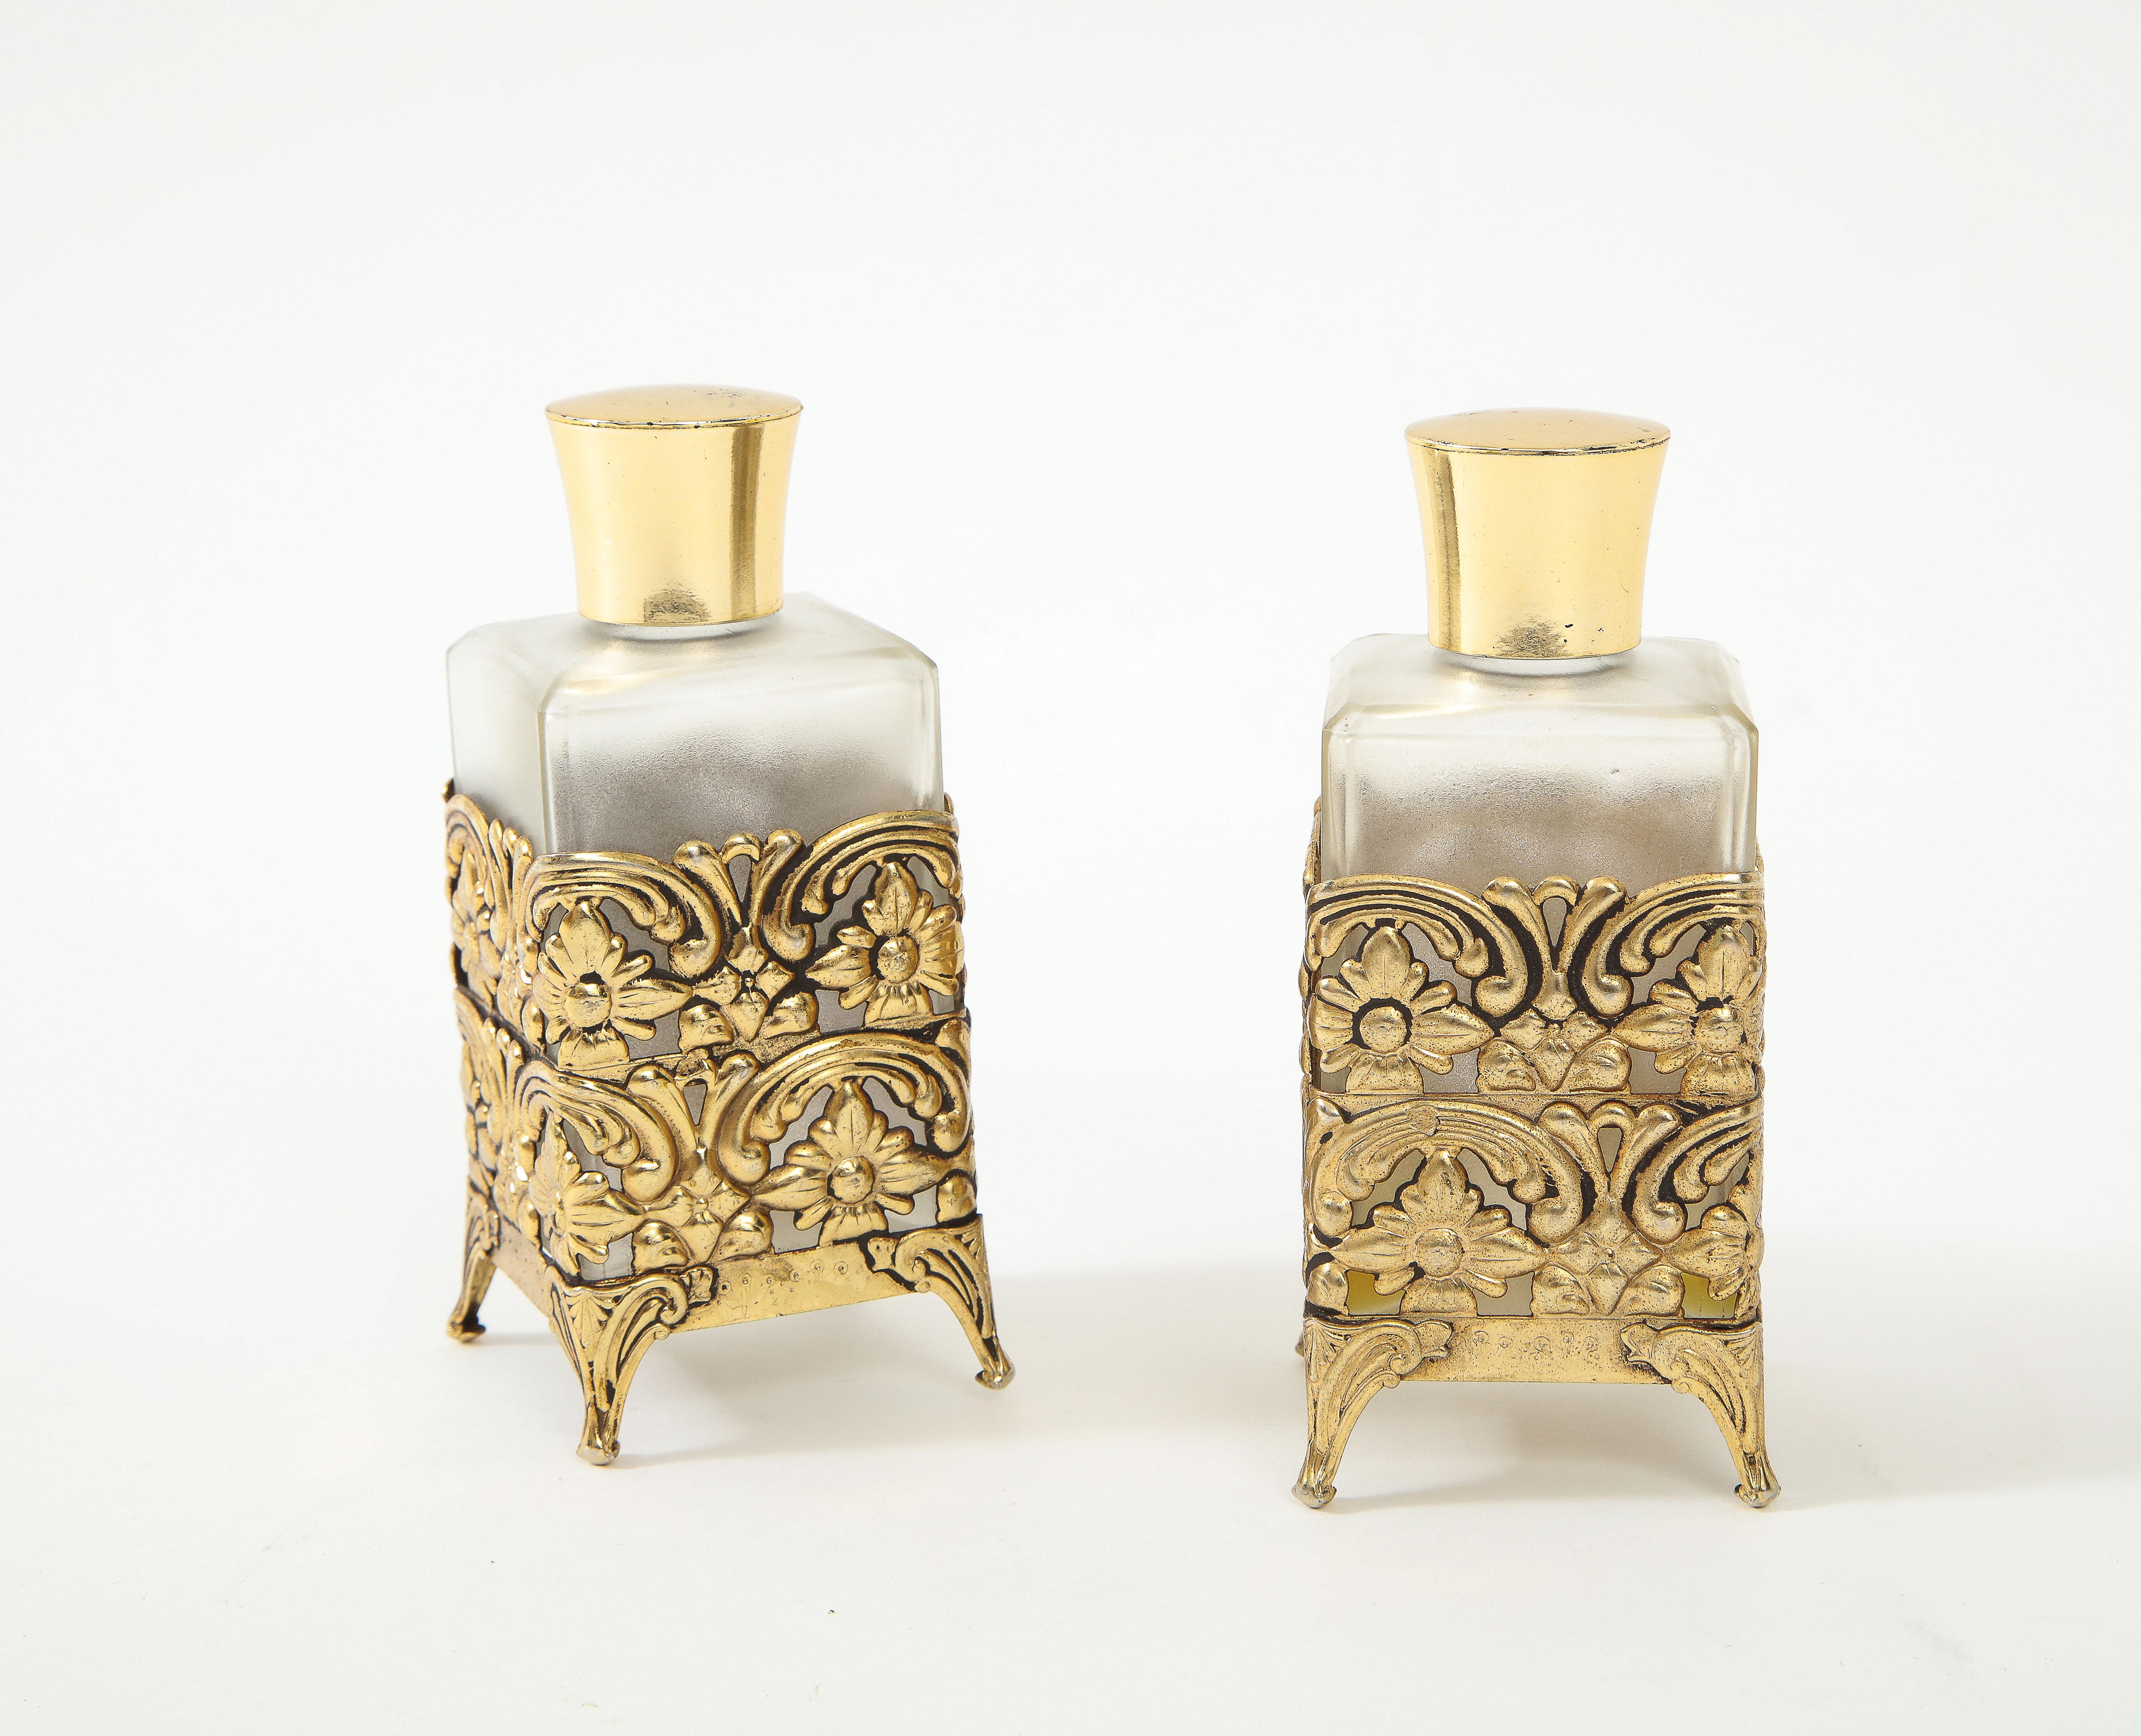 Paire de flacons de parfum en verre d'Allemagne de l'Ouest datant du milieu du siècle dernier, montés sur des supports en laiton moulé d'inspiration Art Nouveau. Estampillé, fabriqué en Allemagne de l'Ouest.